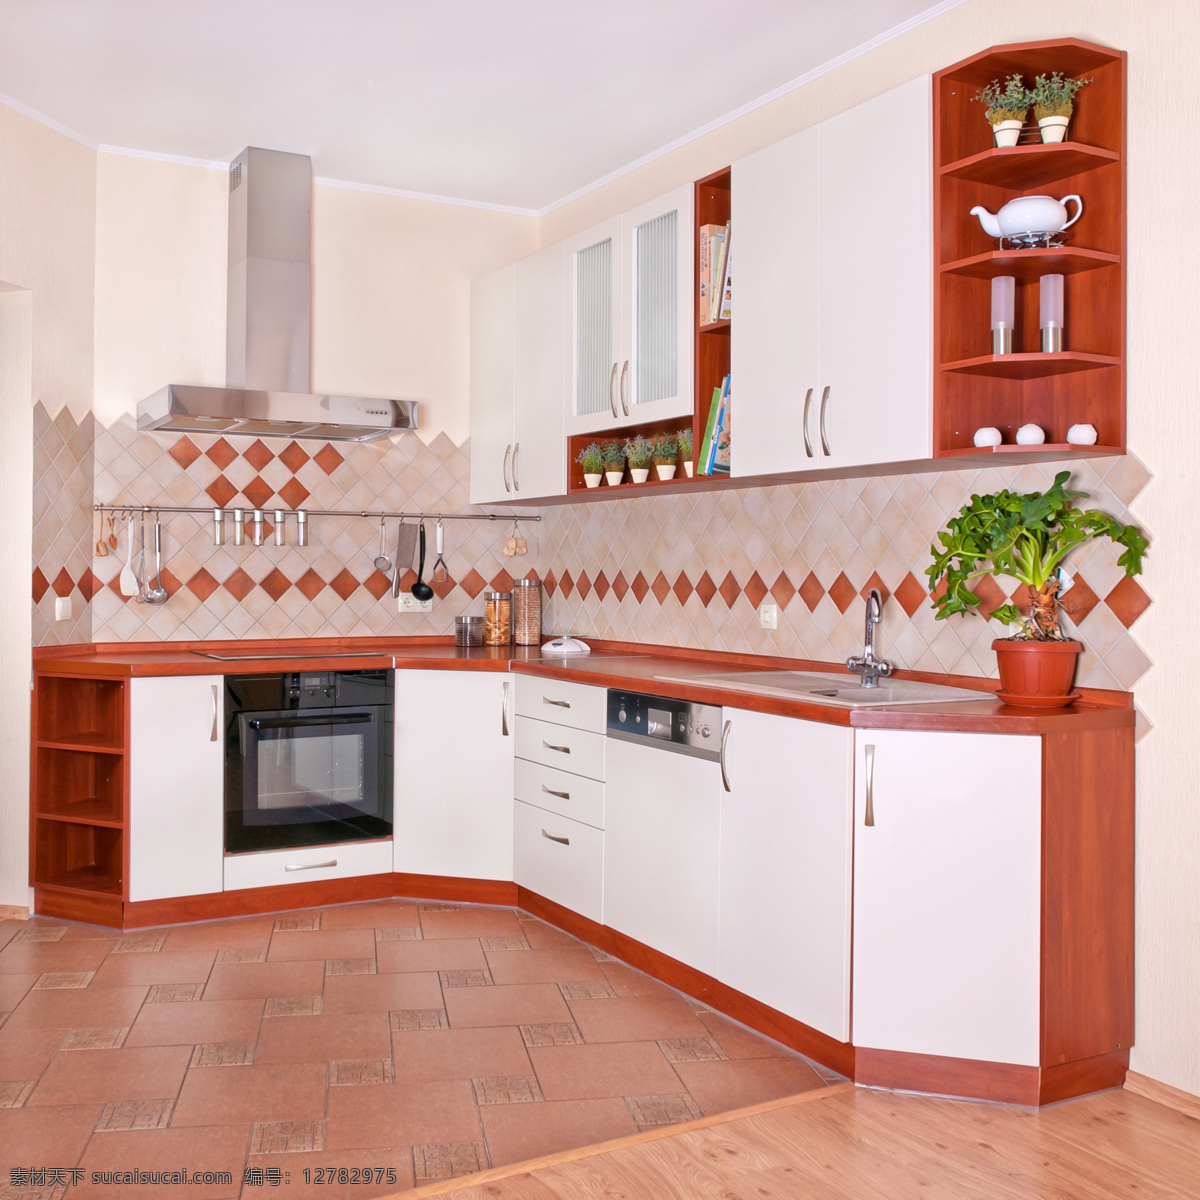 彩色 系列 厨房 装修 装饰 室内设计 厨房设计 整体厨房 敞开式厨房 现代厨房设计 环境家居